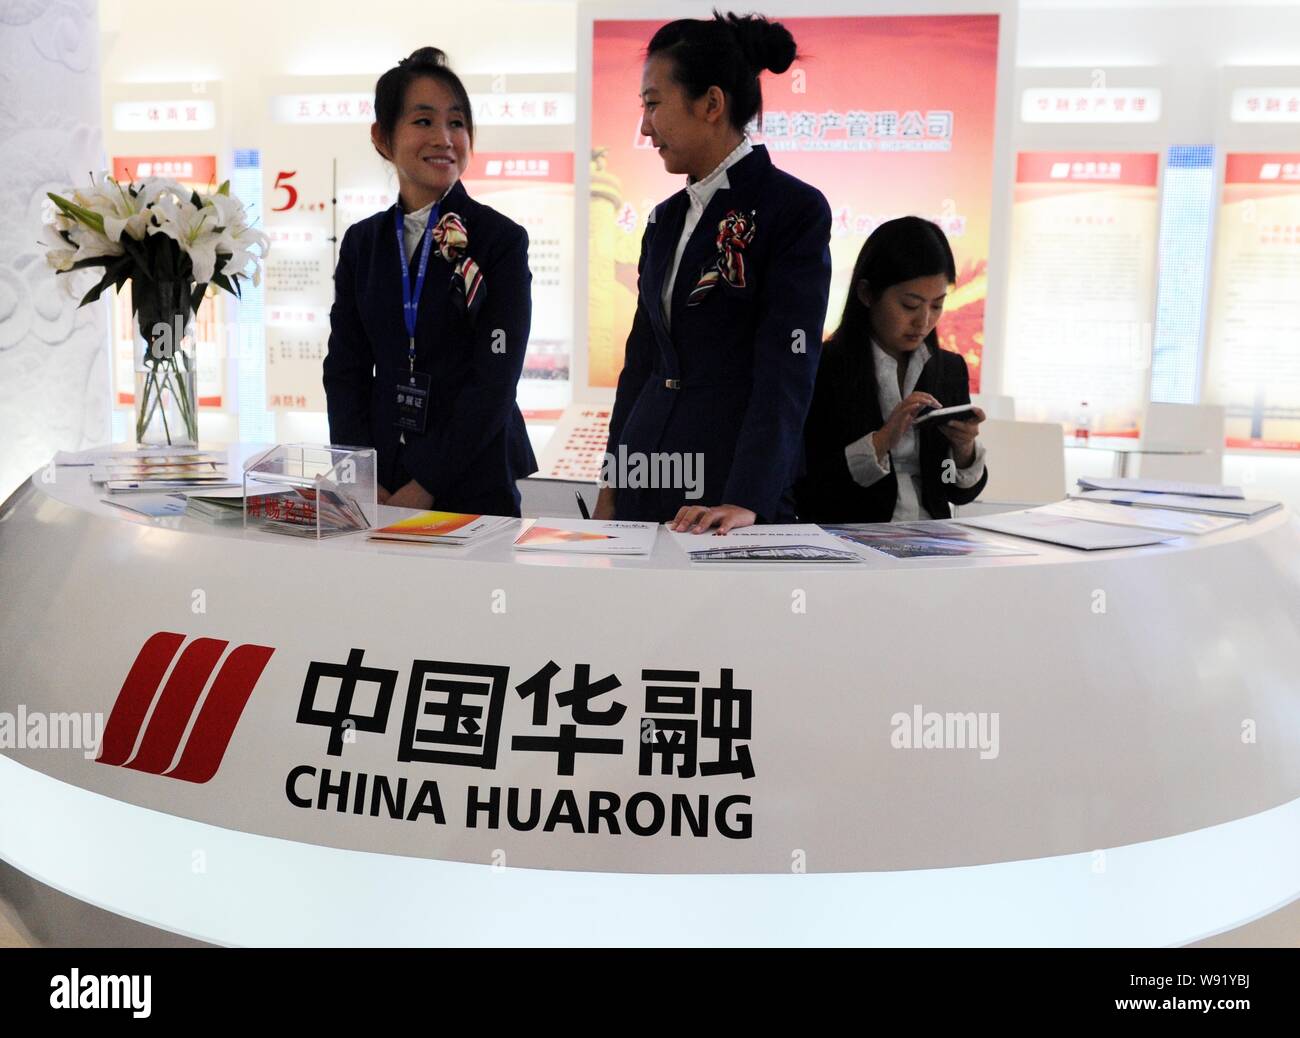 --FILE--employés chinois sont vus sur le stand de la Chine Huarong Asset Management Corporation lors d'une exposition à Zhengzhou, Henan Chine centrale Banque D'Images